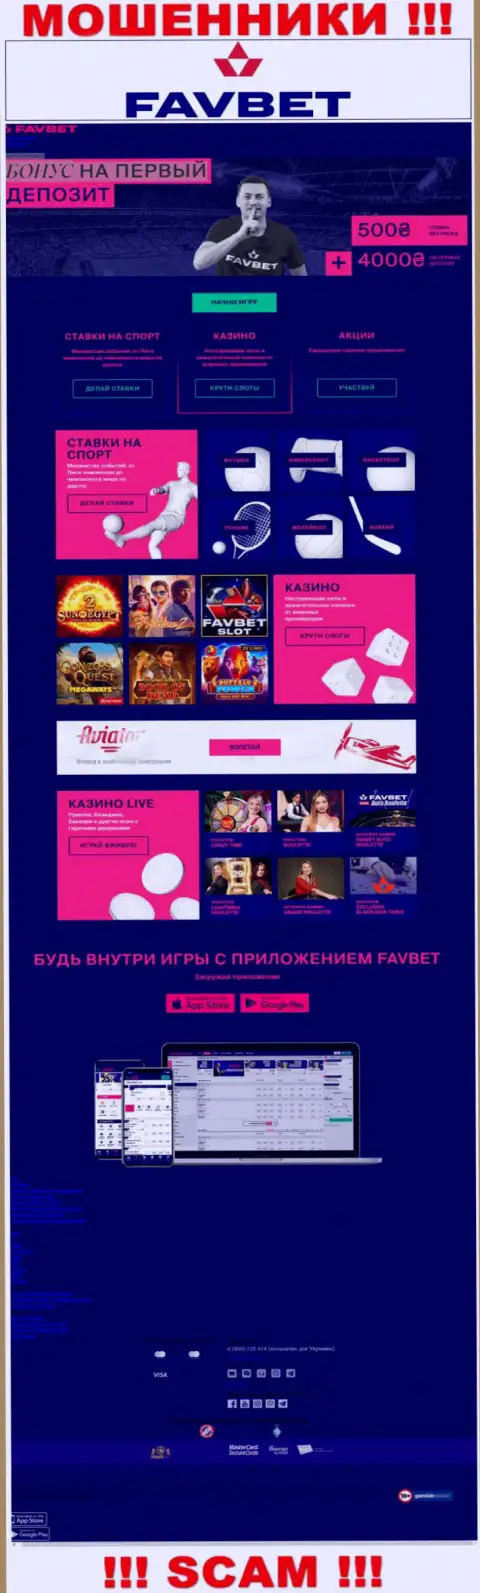 Фейковая информация от аферистов FavBet Com на их официальном веб-сайте ФавБет Ком